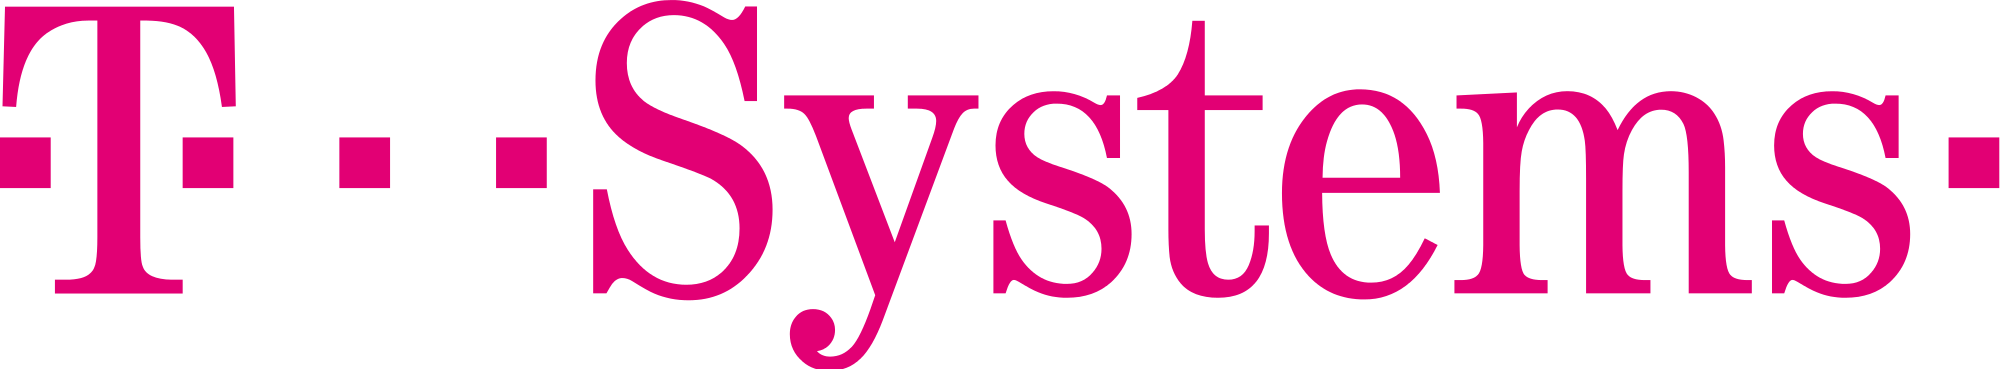 T System logo integrator Weblib